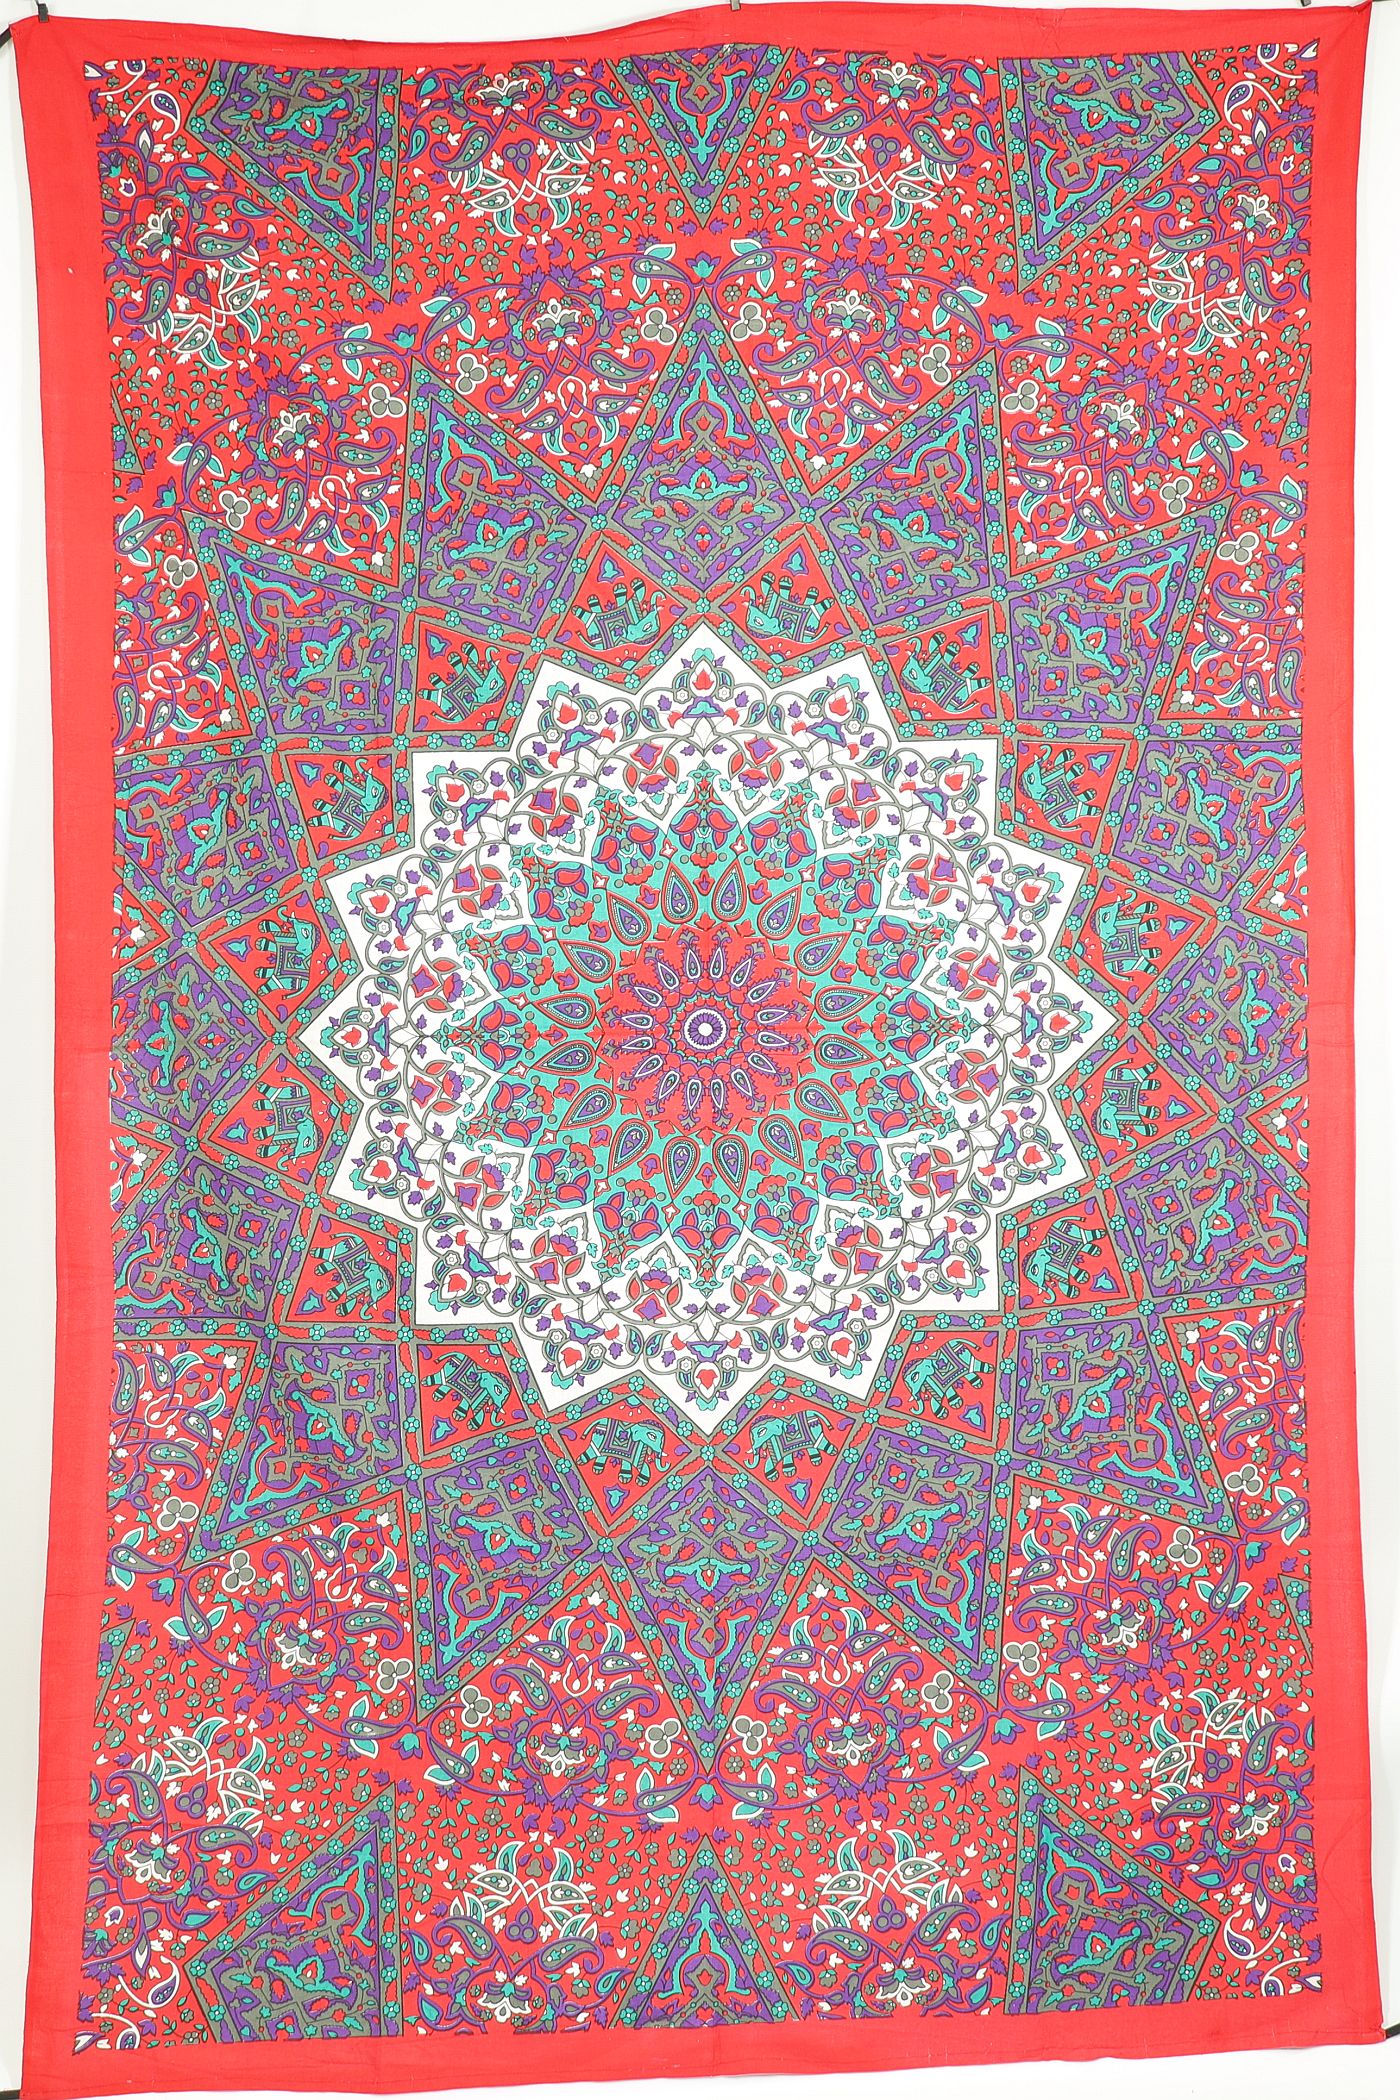 Wandtuch XL 130x210 - Mandala Stern mit Elefanten und Blumen - 100% Baumwolle - detailreicher indischer Druck - mehrfarbig - dekoratives Tuch, Wandbild, Tagesdecke, Bedcover, Vorhang, Picknick-Decke, Strandtuch